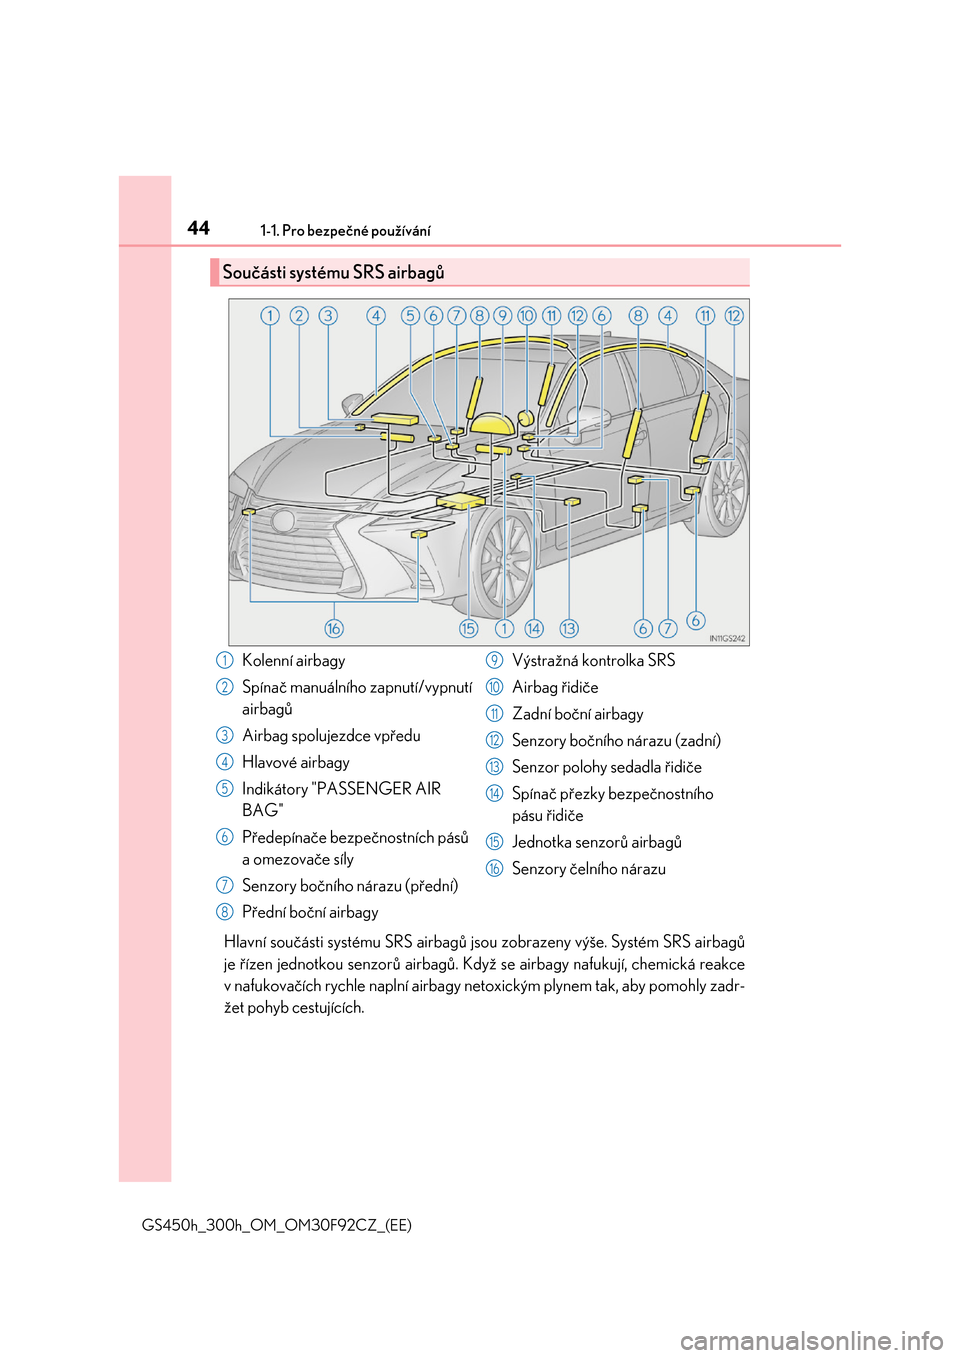 Lexus GS450h 2017  Návod k obsluze (in Czech) 441-1. Pro bezpečné používání
GS450h_300h_OM_OM30F92CZ_(EE)
Hlavní součásti systému SRS airbagů jsou zobrazeny výše. Systém SRS airbagů 
je řízen jednotkou senzorů  airbagů. Když s